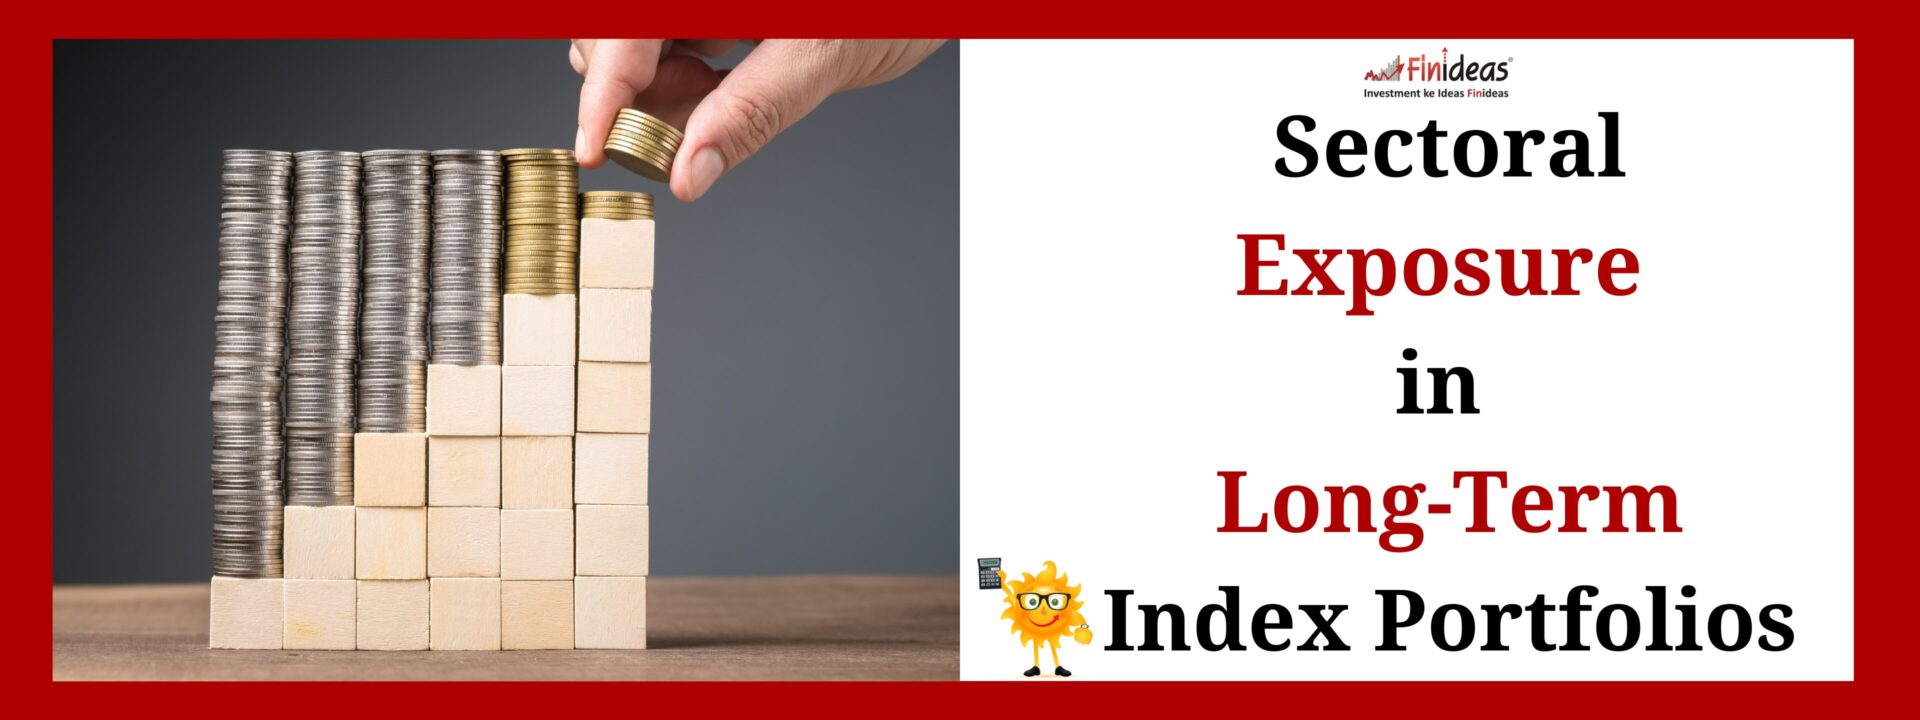 Sectoral Exposure in Long-Term Index Portfolios